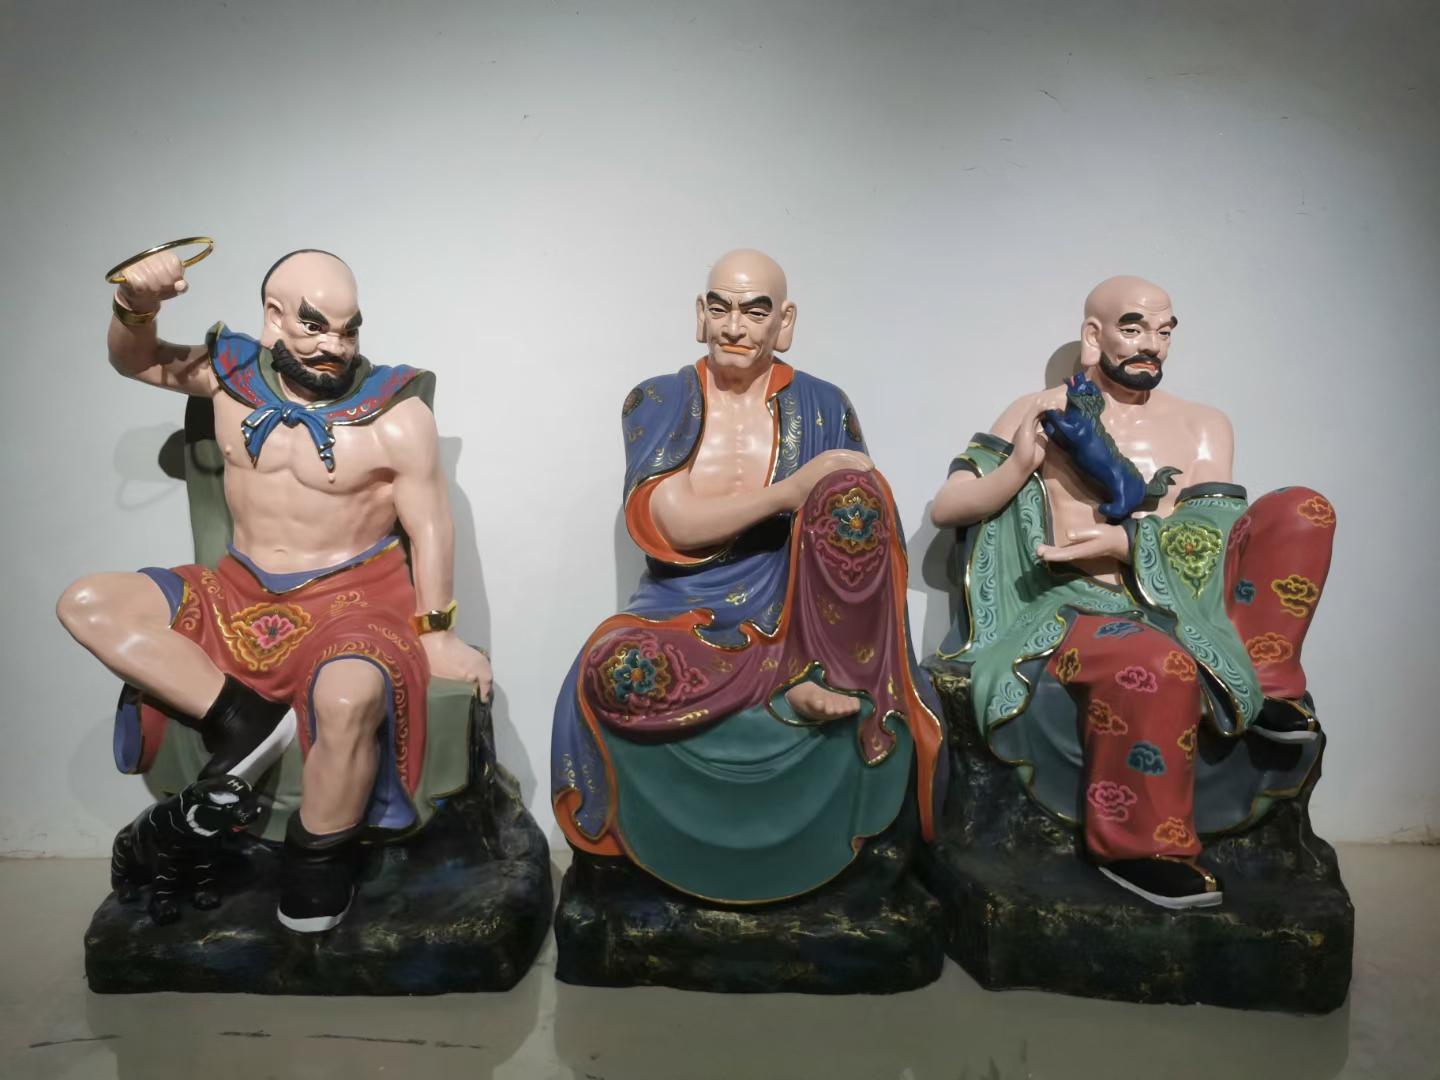 三世佛、十八罗汉、自在观音、四大菩萨-雕塑艺术 铭泰艺术铸造厂